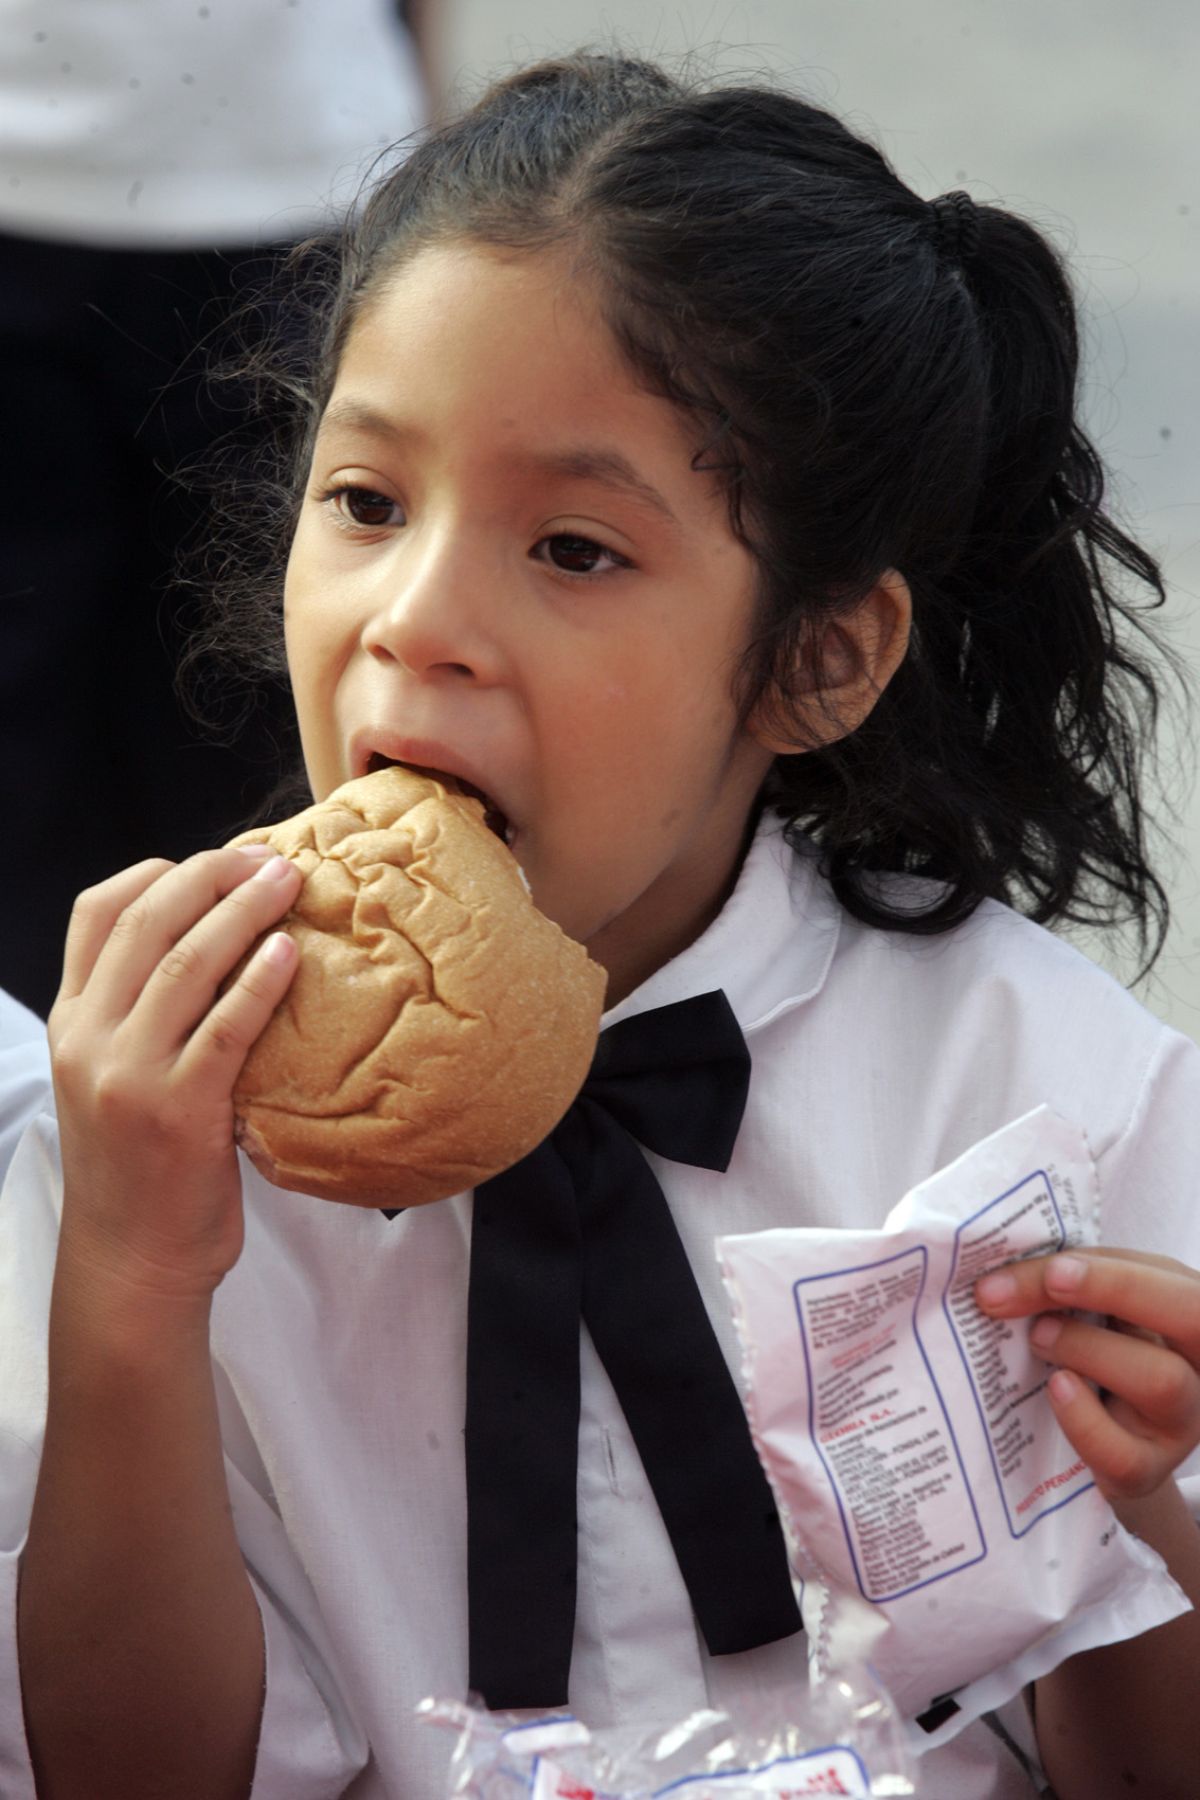 Cada niño ingiere una cantidad diferente de alimentos, según su capacidad gástrica. Foto: ANDINA/Archivo.